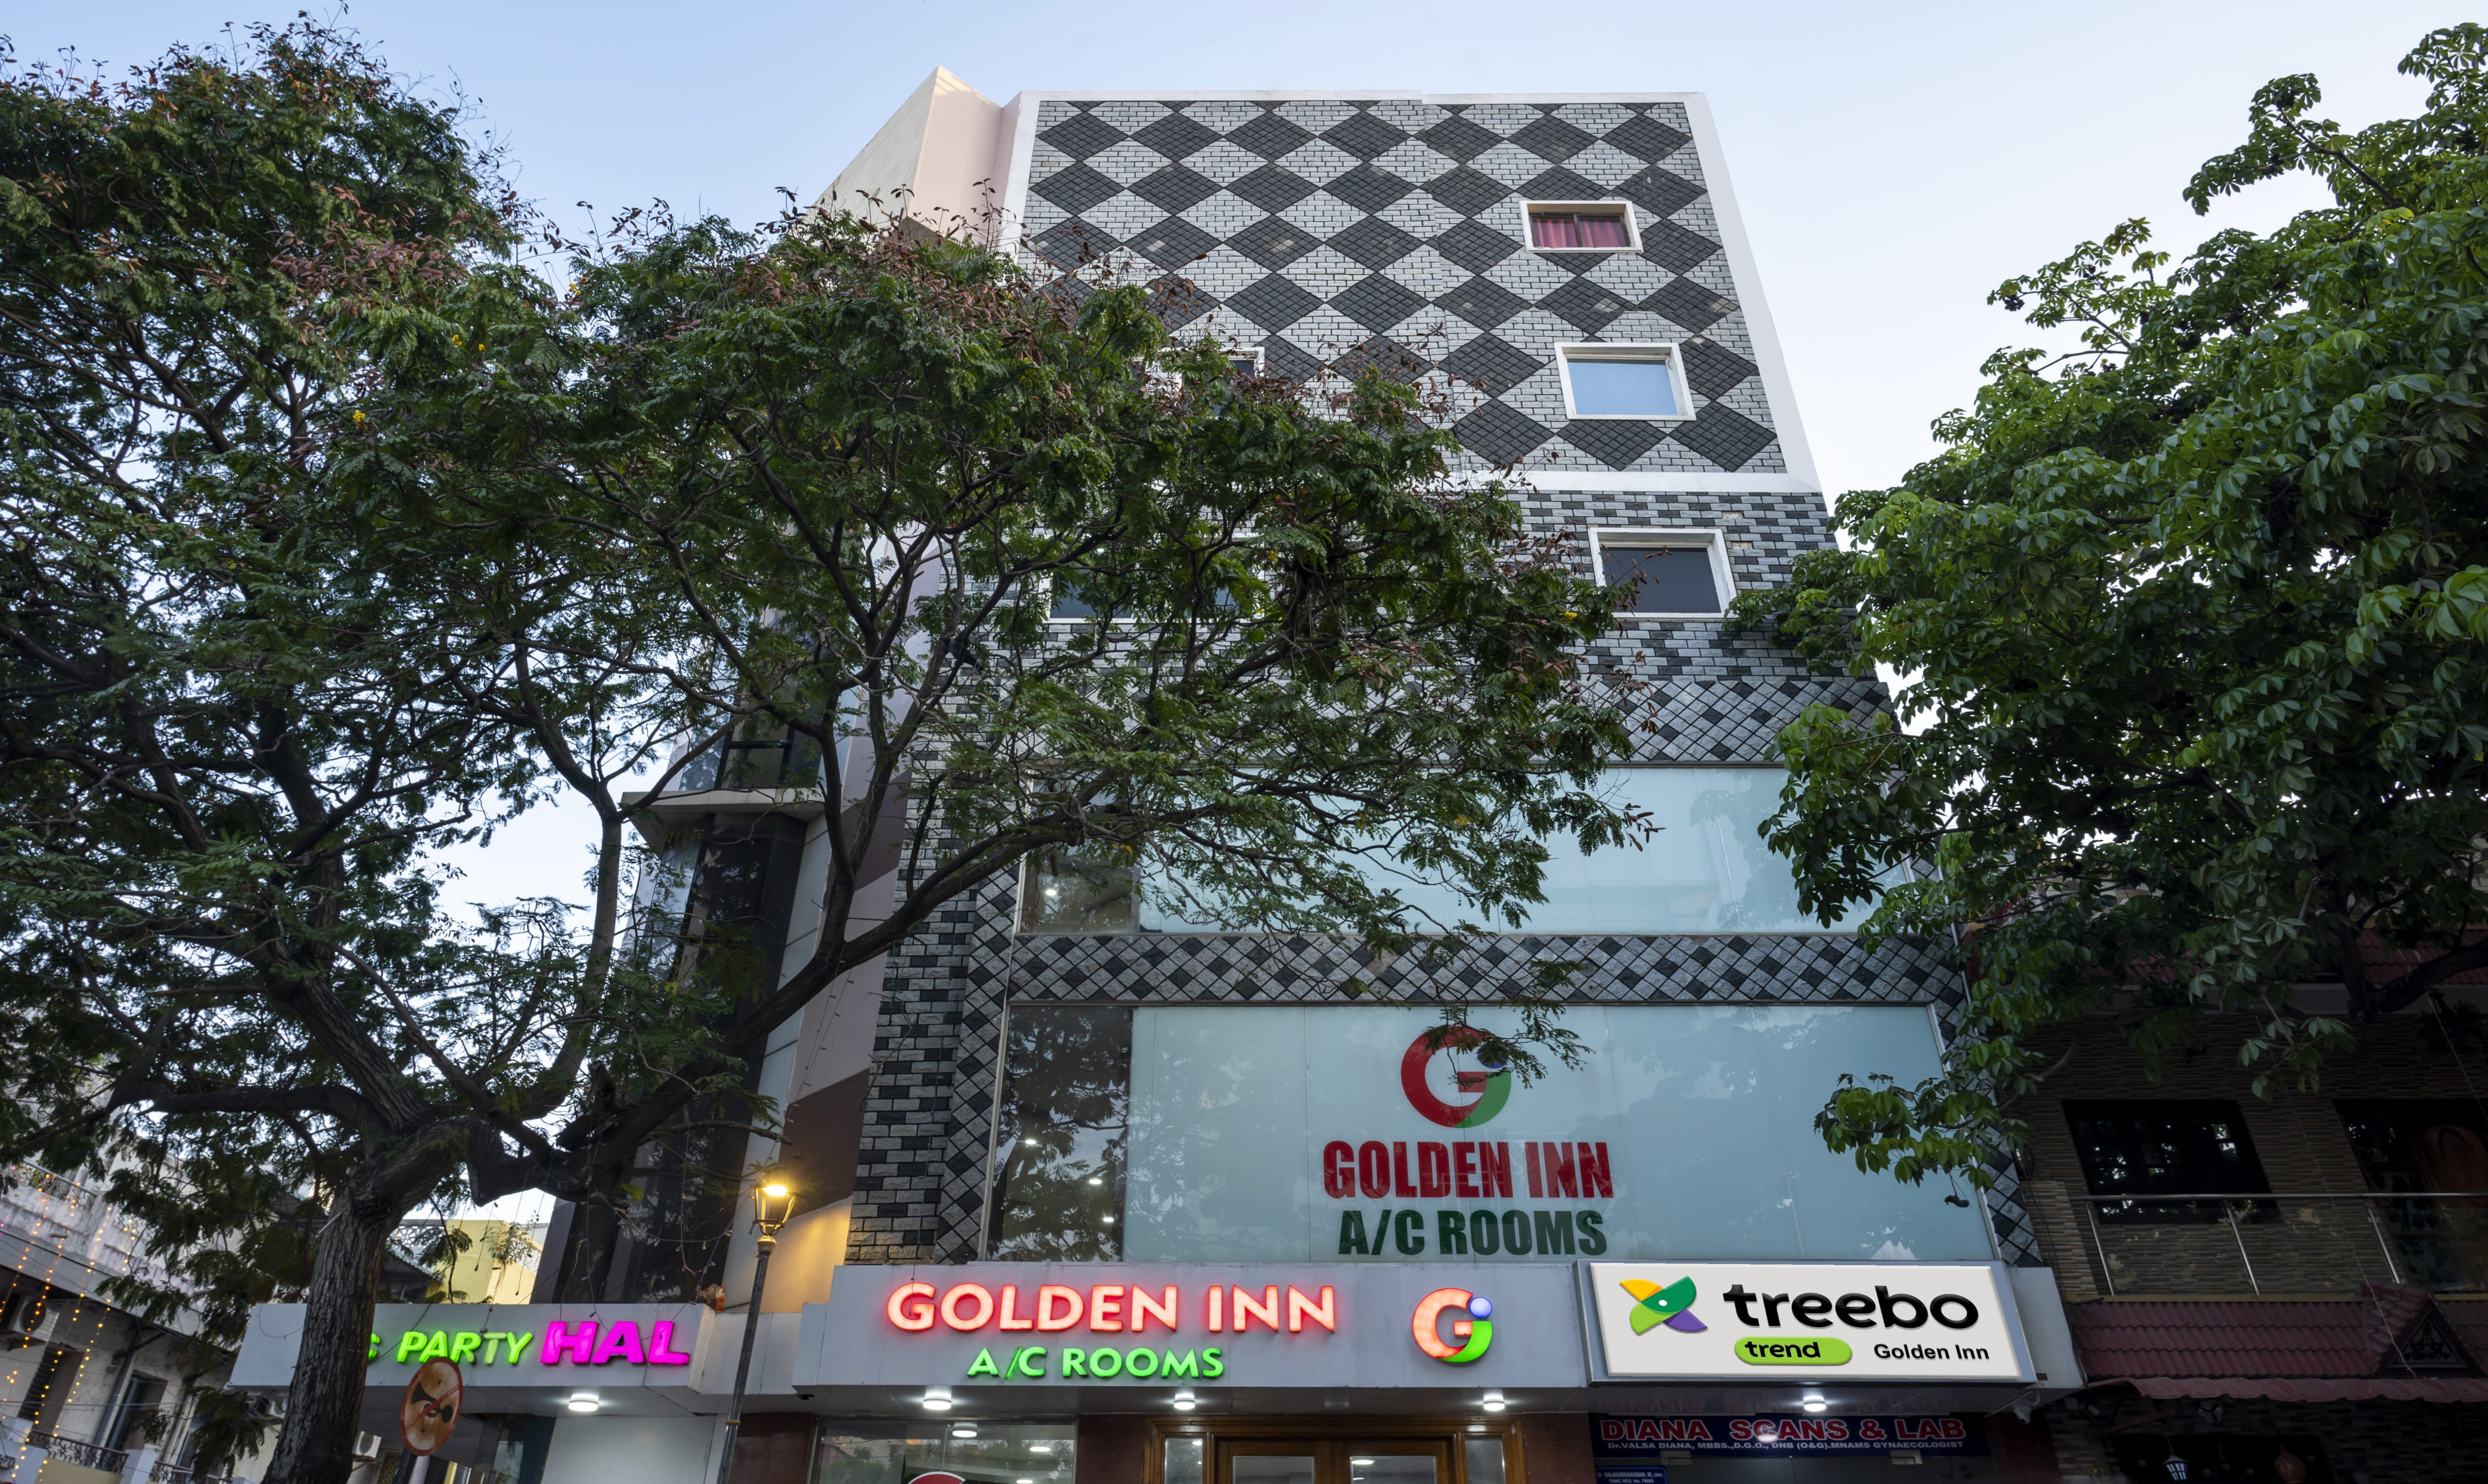 Treebo Trend Golden Inn Pondicherry